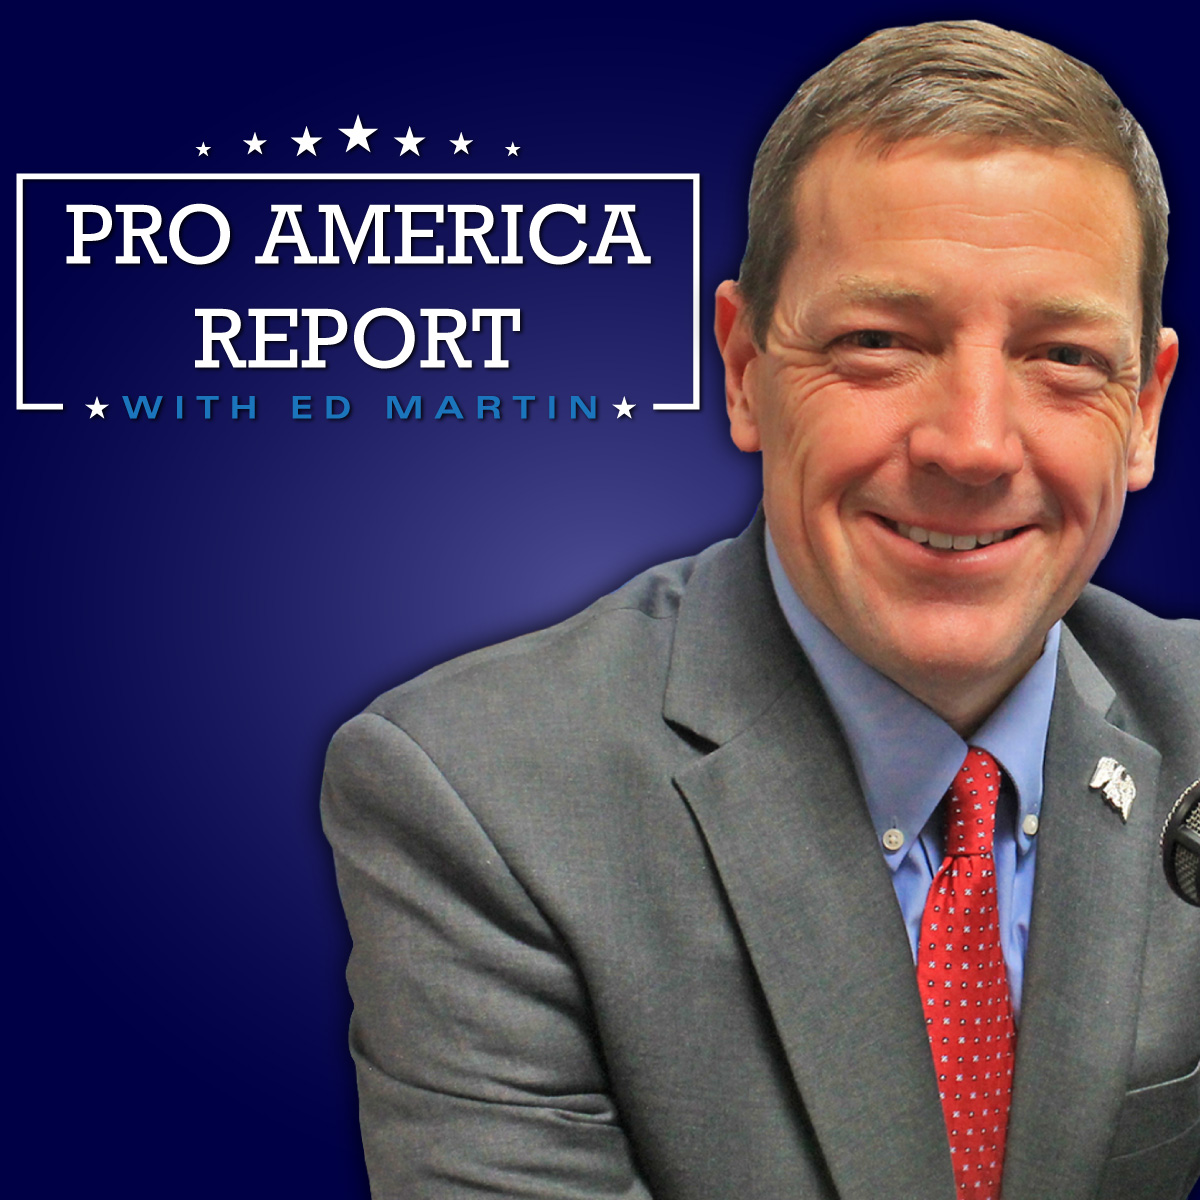 The Pro America Report Ed Martin 06.01.2020